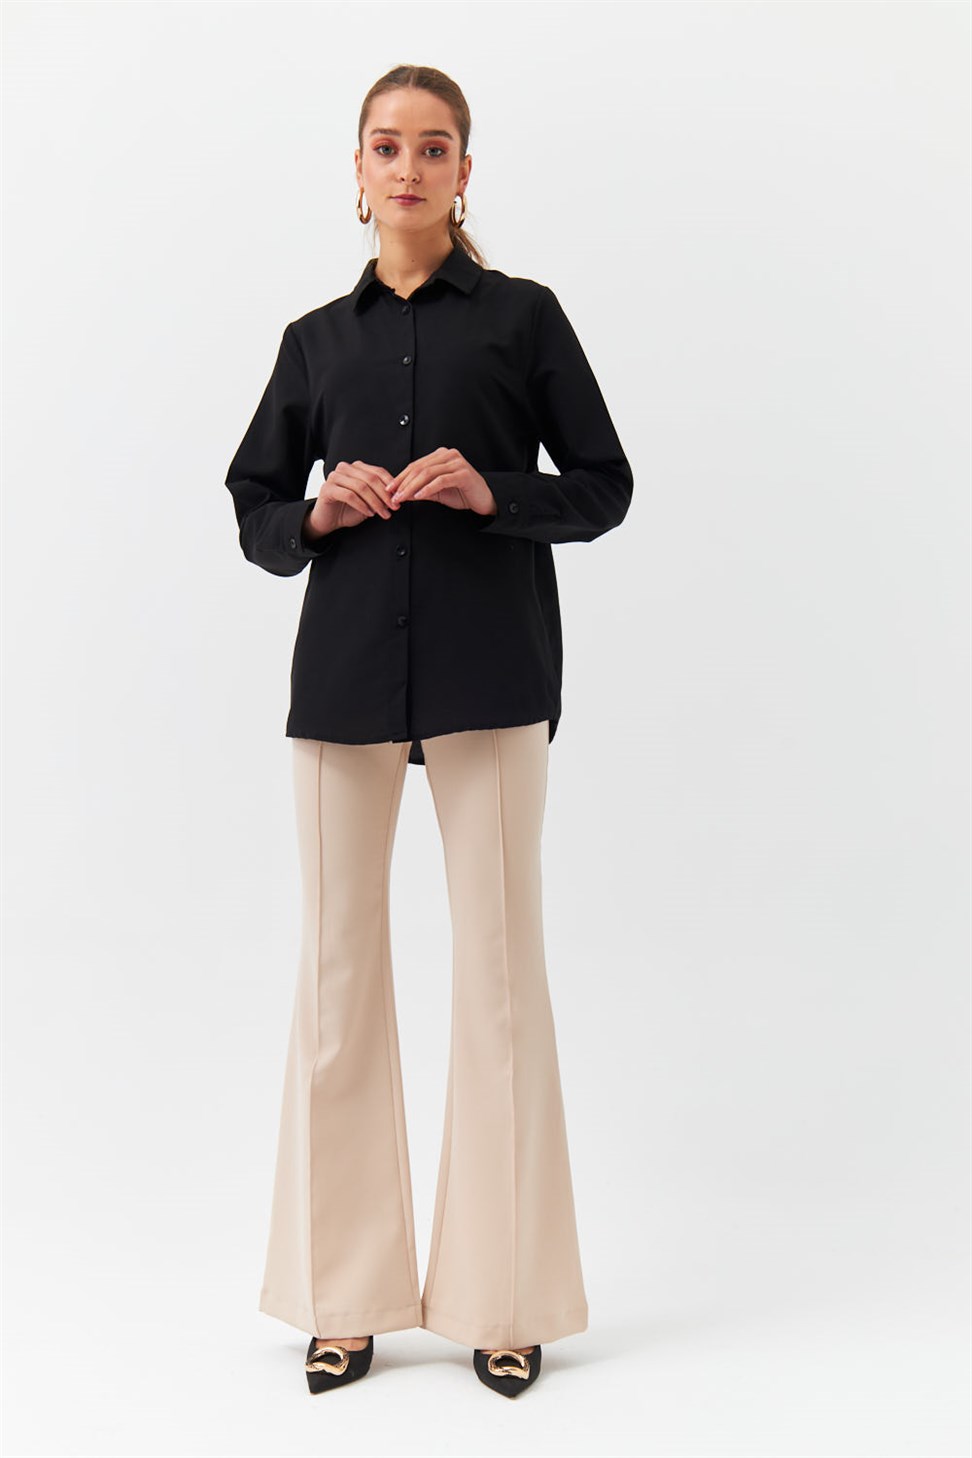 Modest Classic Collar Long Sleeve Black Womens Shirt